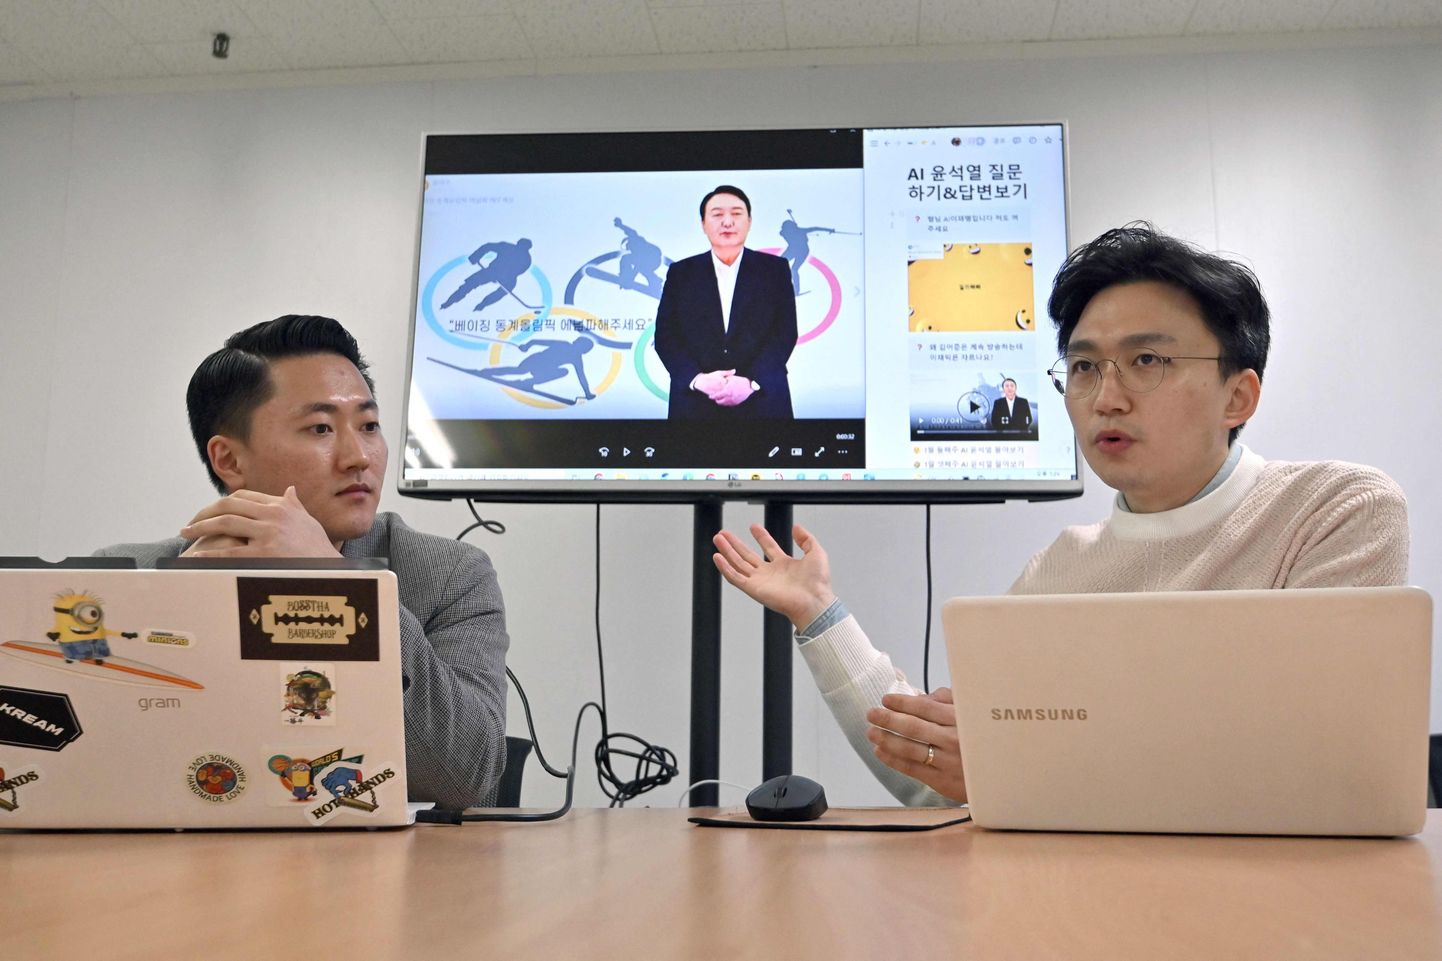 Tehisintellektiga presidendikampaaniat juhtiv Baik Kyeong-hoon näitab ekraanilt Lõuna-Korea presidendikandidaadi Yoon Suk-yeoli digitaalset avatari, mis on hea näide sellest, kui kaugele kunstlikult loodud videod ehk süvavõltsingud on jõudnud.